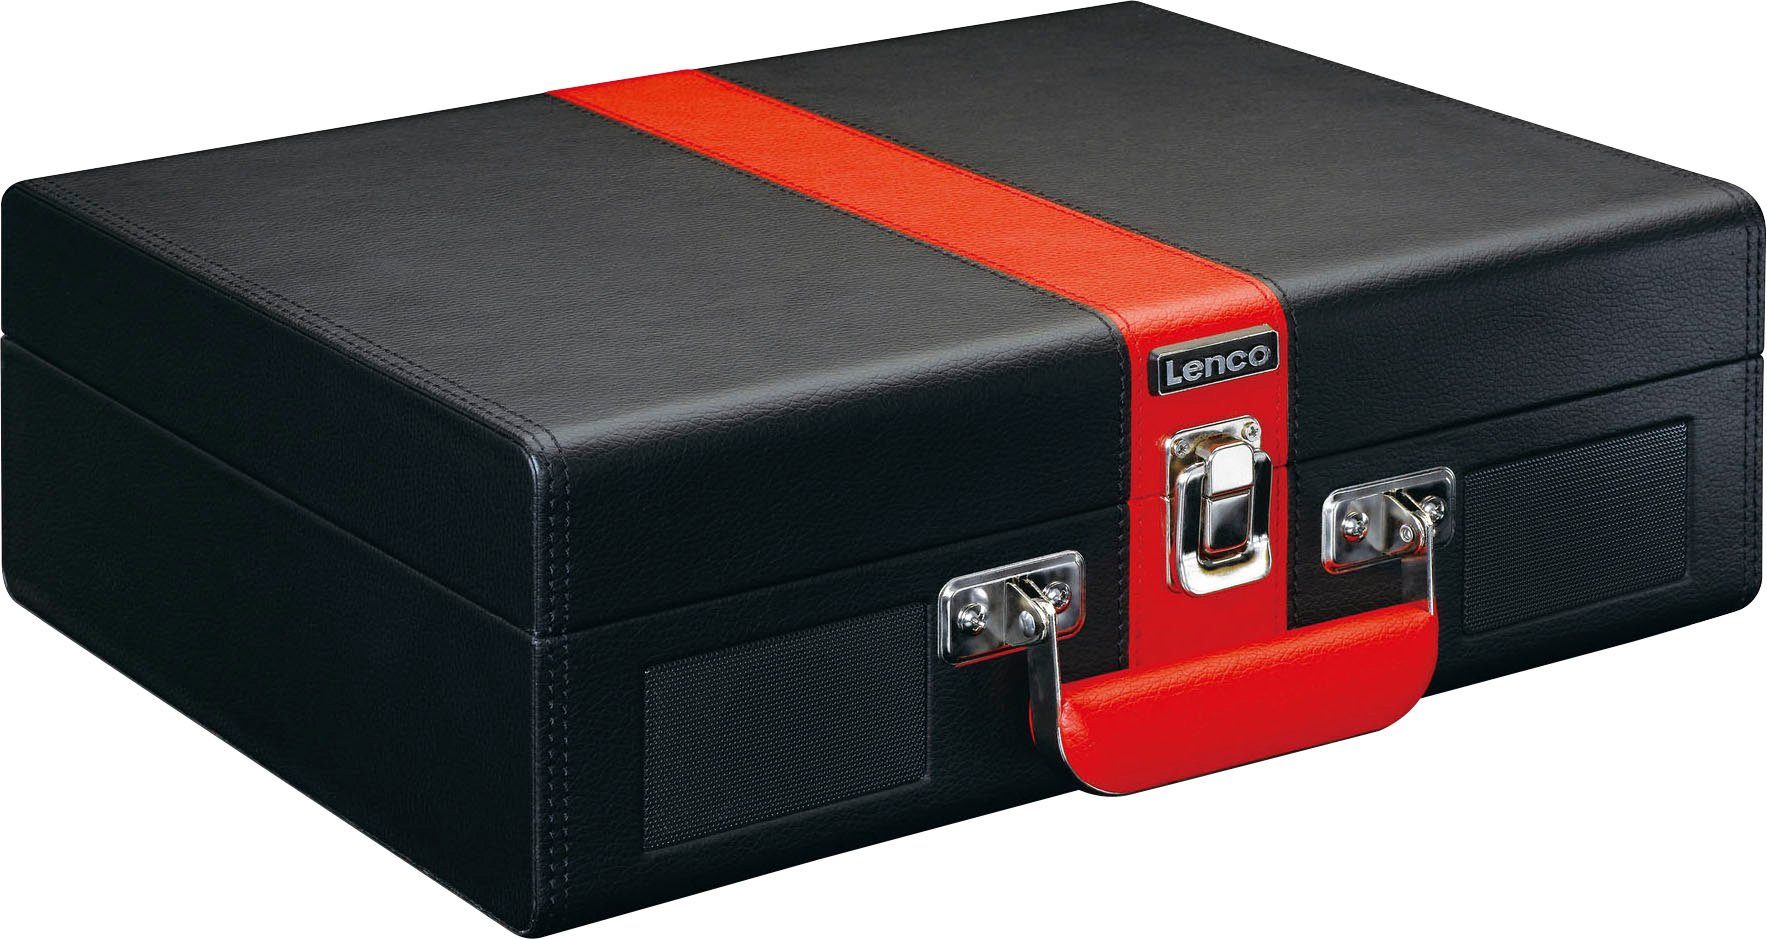 Lenco Koffer Plattenspieler mit BT und eingebauten Lsp. Plattenspieler (Riemenantrieb) Rot-Schwarz